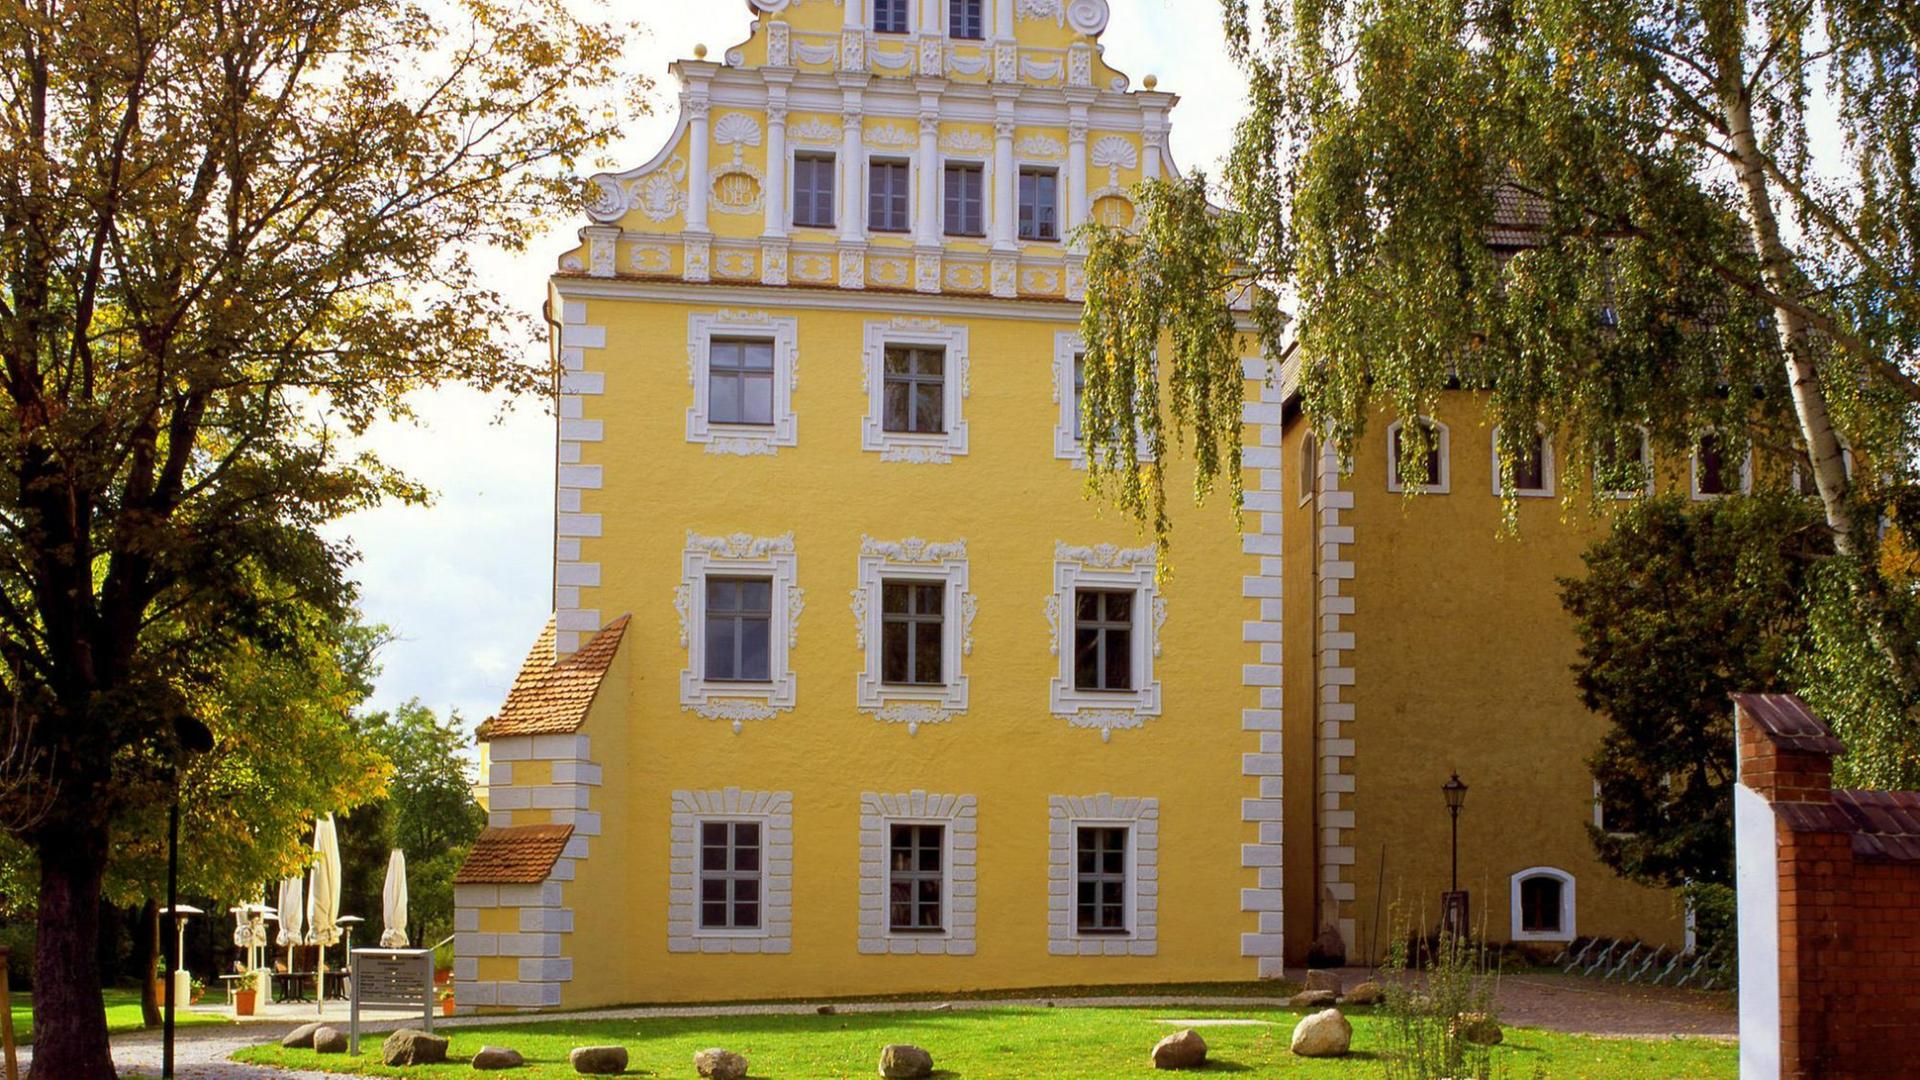 Der Renaissancegiebel an der Ostseite von Schloss Lübben im Spreewald